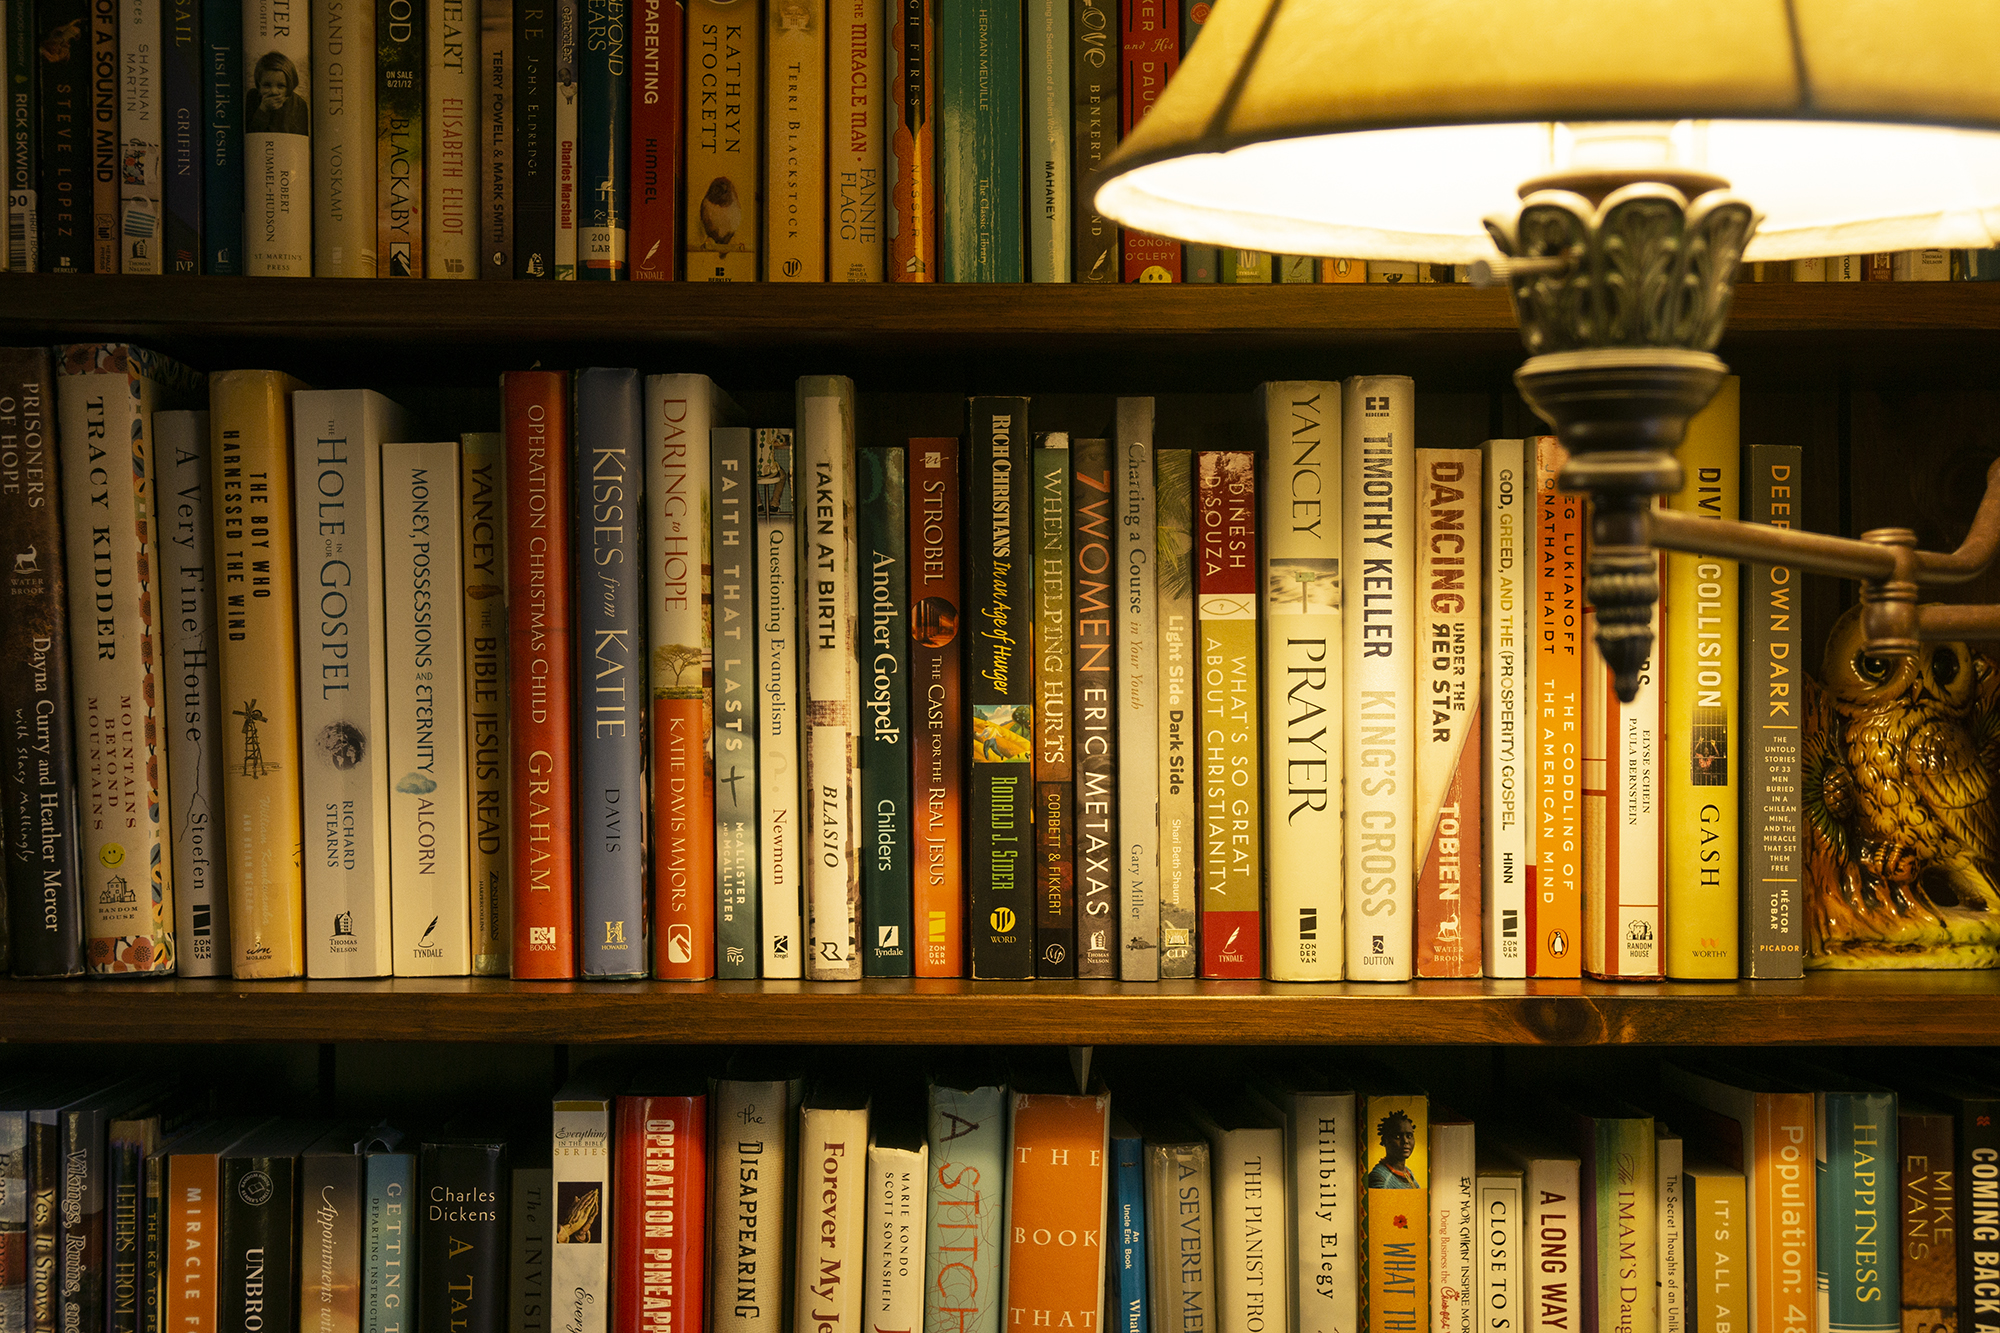 Books on a shelf with light